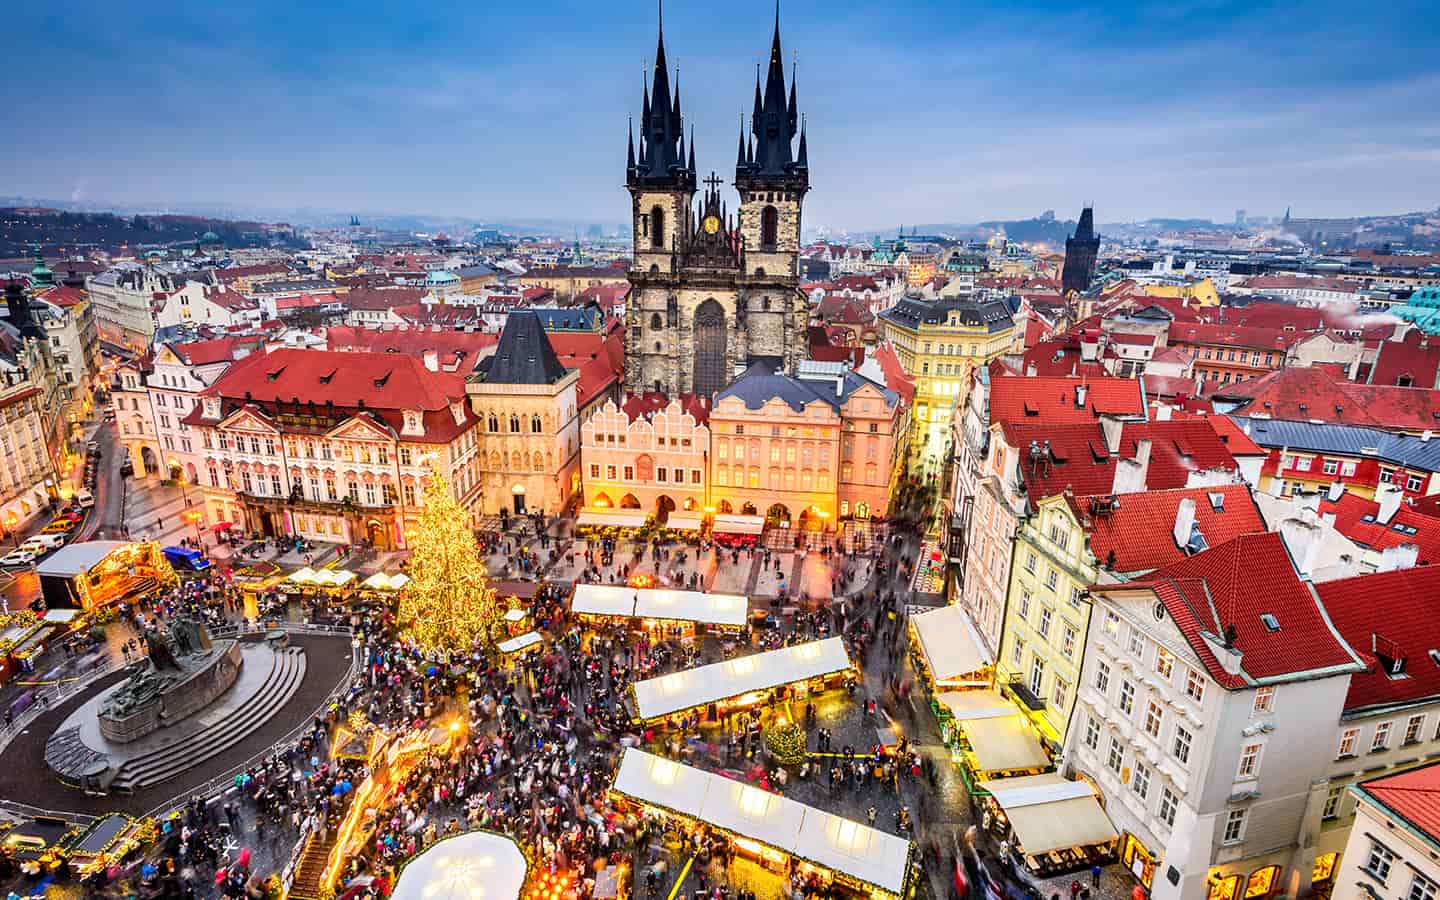 Weihnachtsmarkt in Stare Mesto, Tyn Kirche in Böhmen, Prag, Tschechien